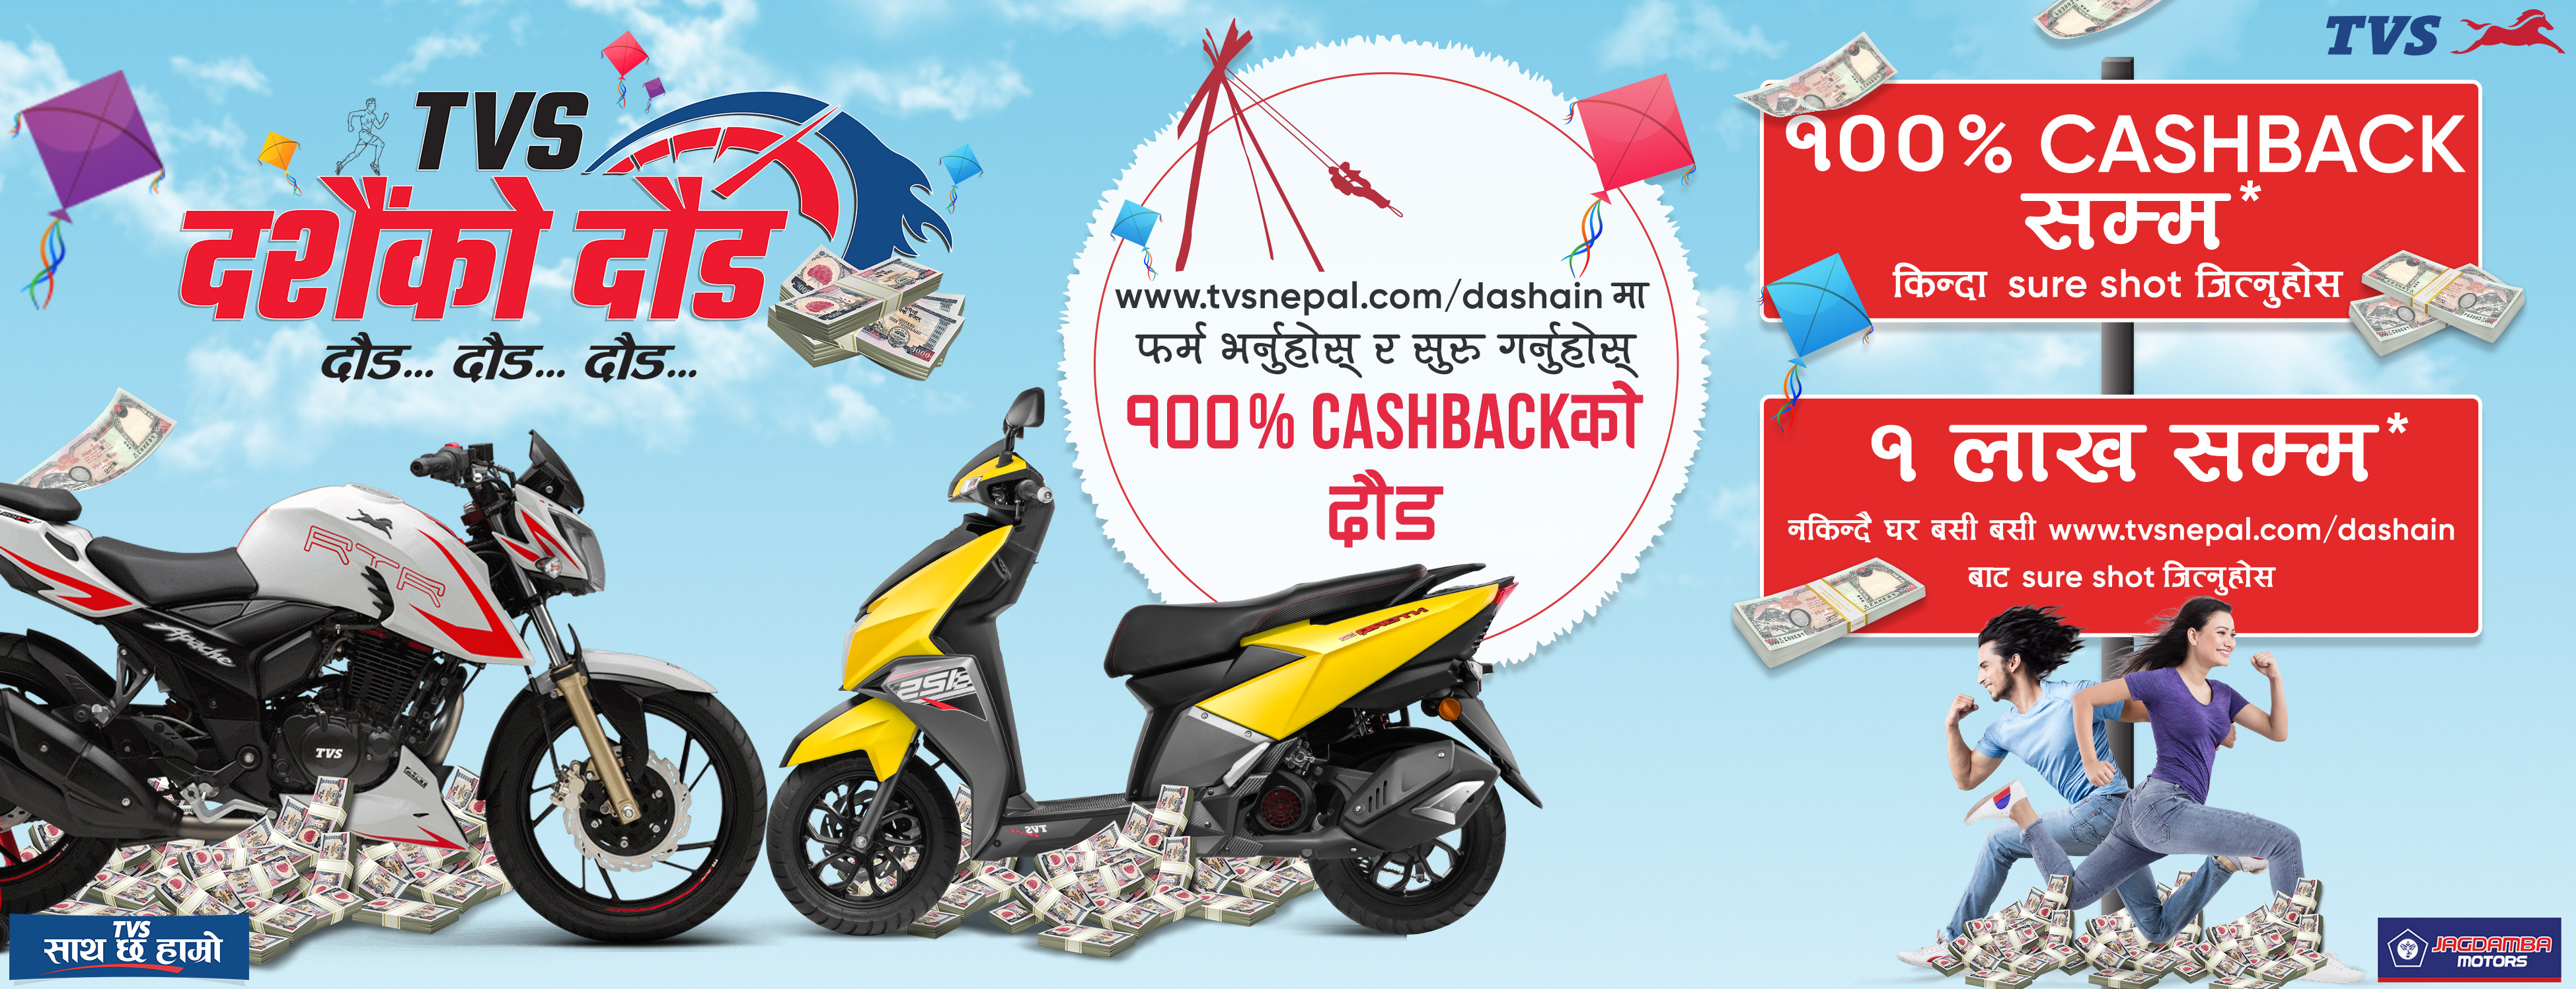 TVS Dashain Ko Daud: Oppurtunity to Win up to Rs. 1 Lakh & 100% Cash Back! (hamropatro)